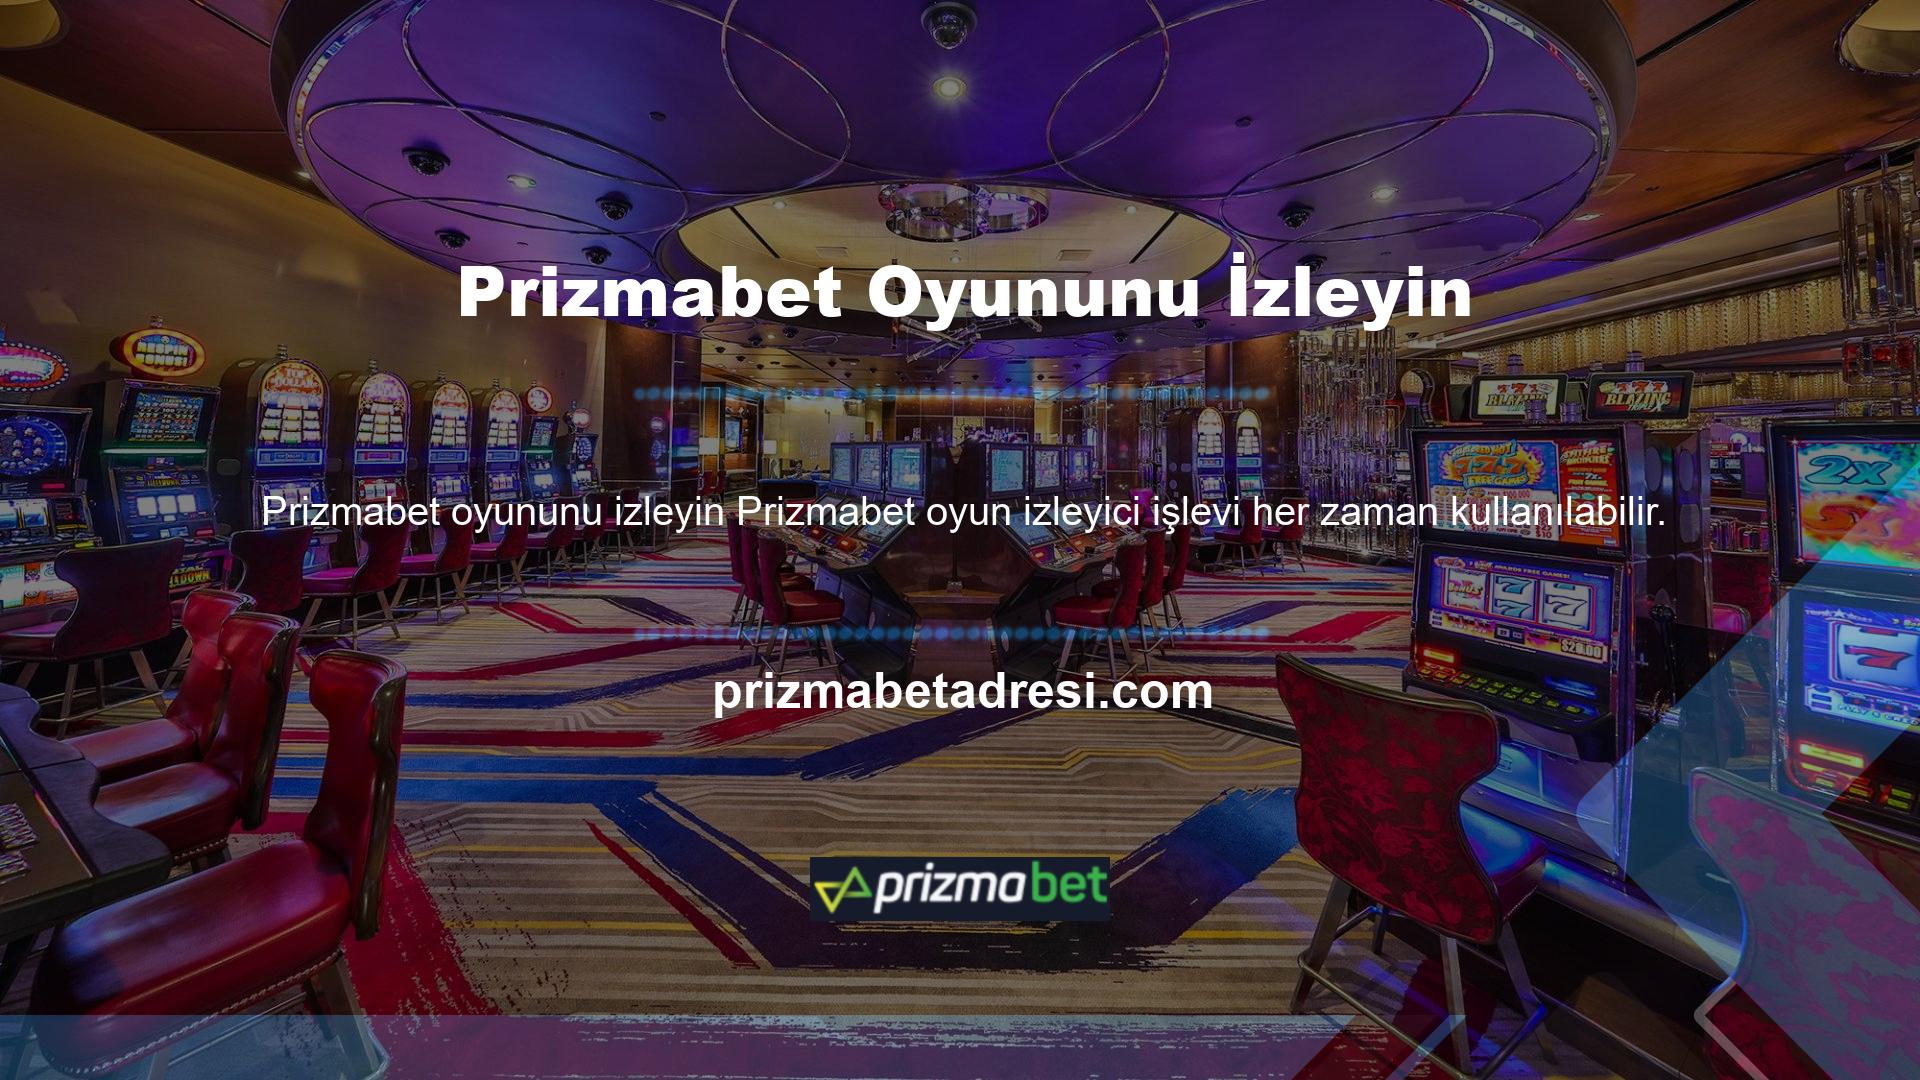 Prizmabet, üyelerine oyun ve casino platformu olarak lisans vermektedir